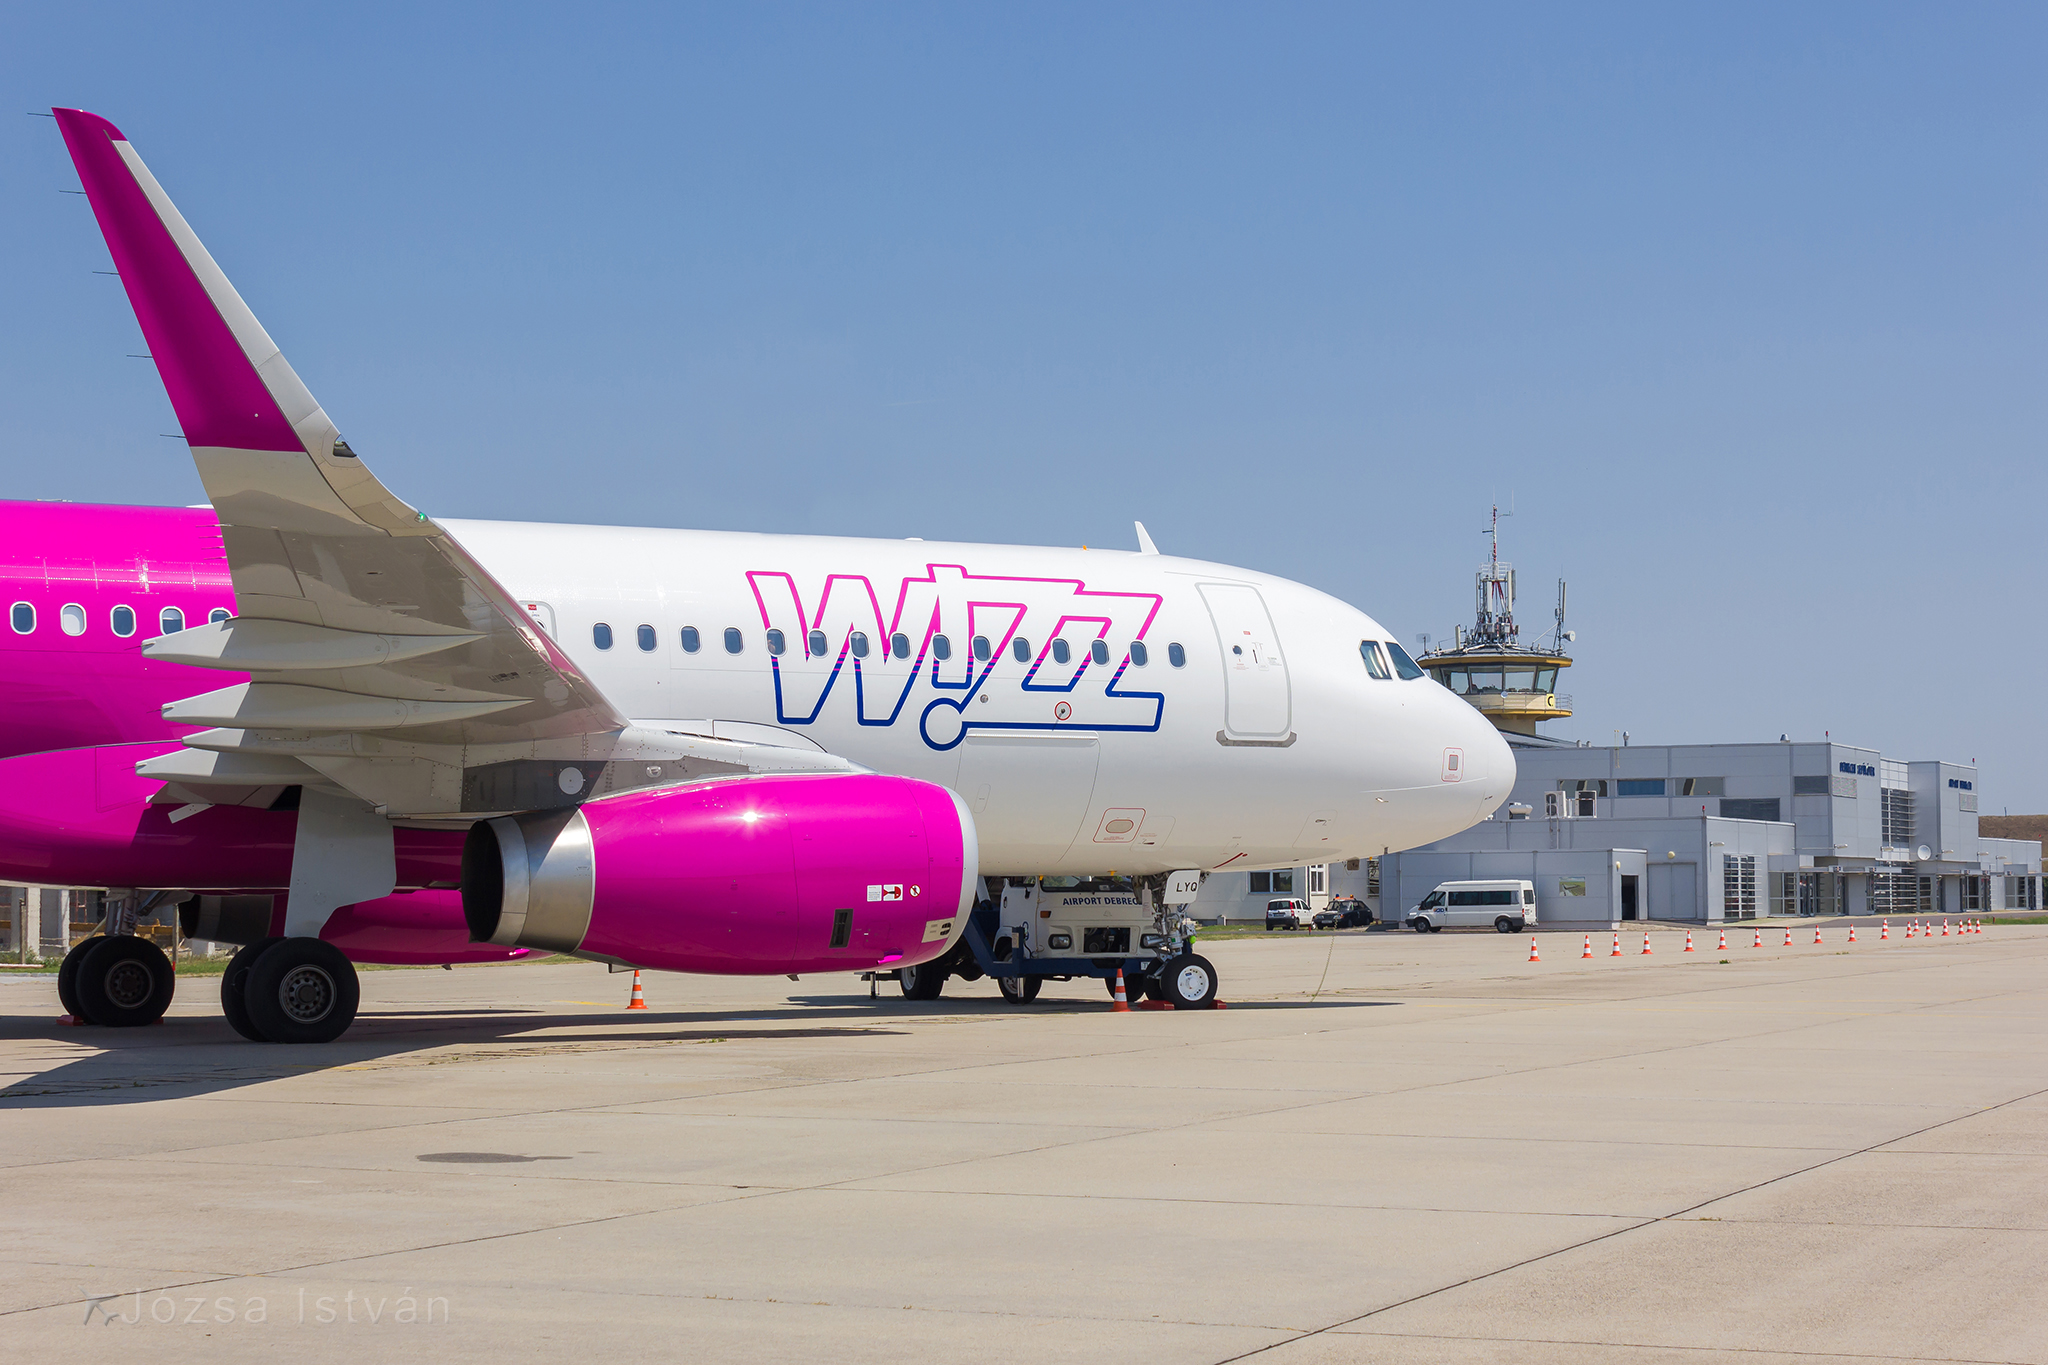 Jövőre jelentős növekedésre számít a Wizz Air a debreceni repülőtéren